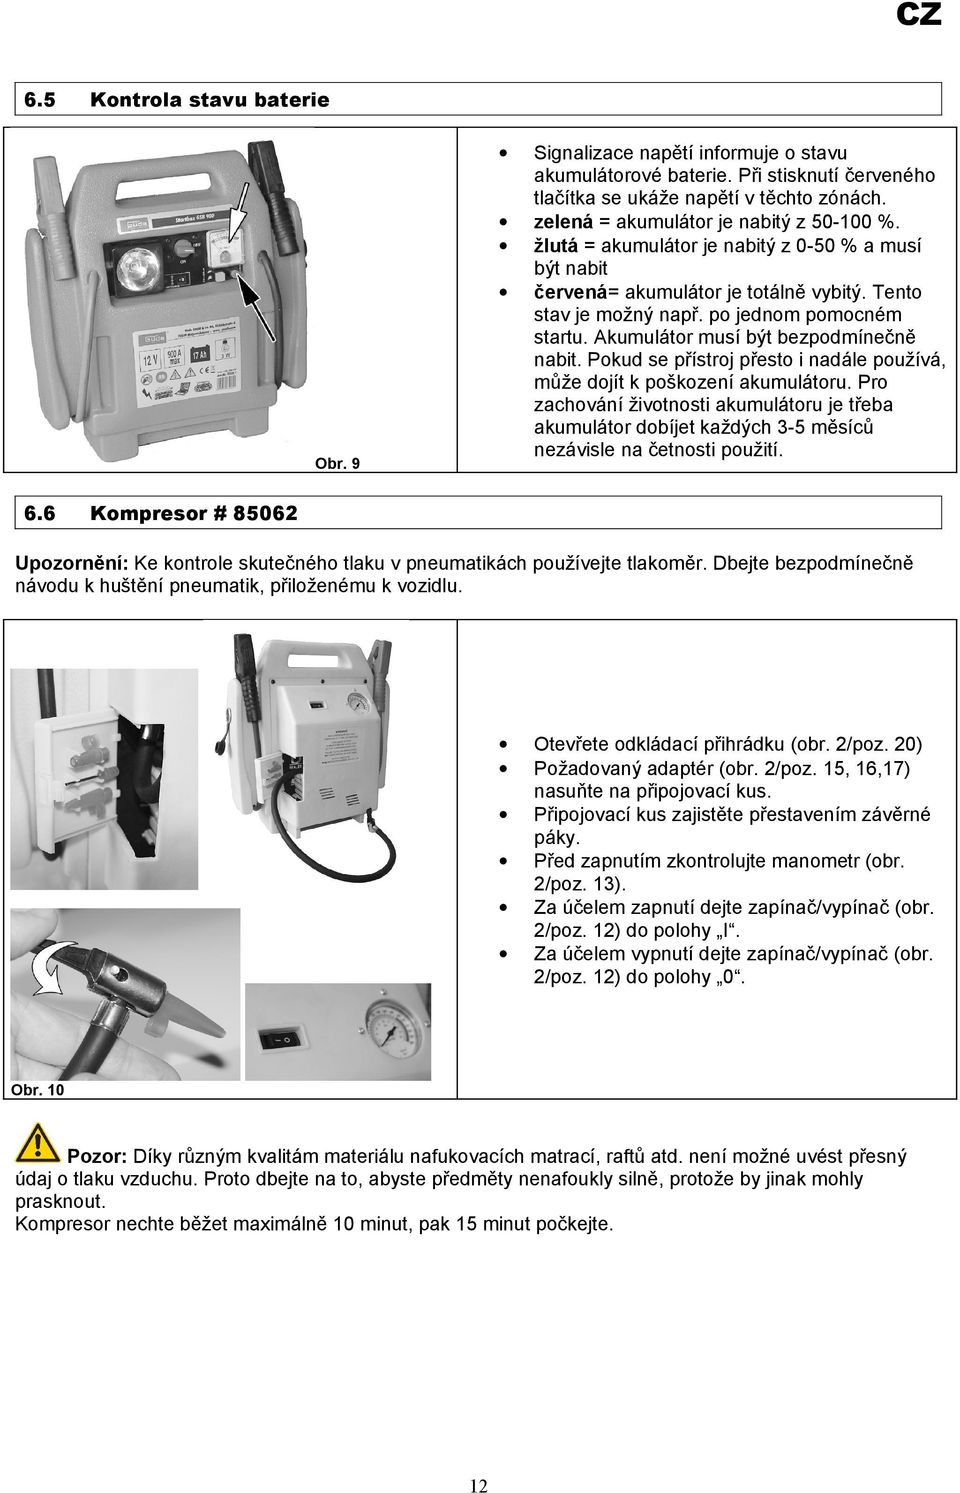 Akumulátor musí být bezpodmínečně nabit. Pokud se přístroj přesto i nadále používá, může dojít k poškození akumulátoru.